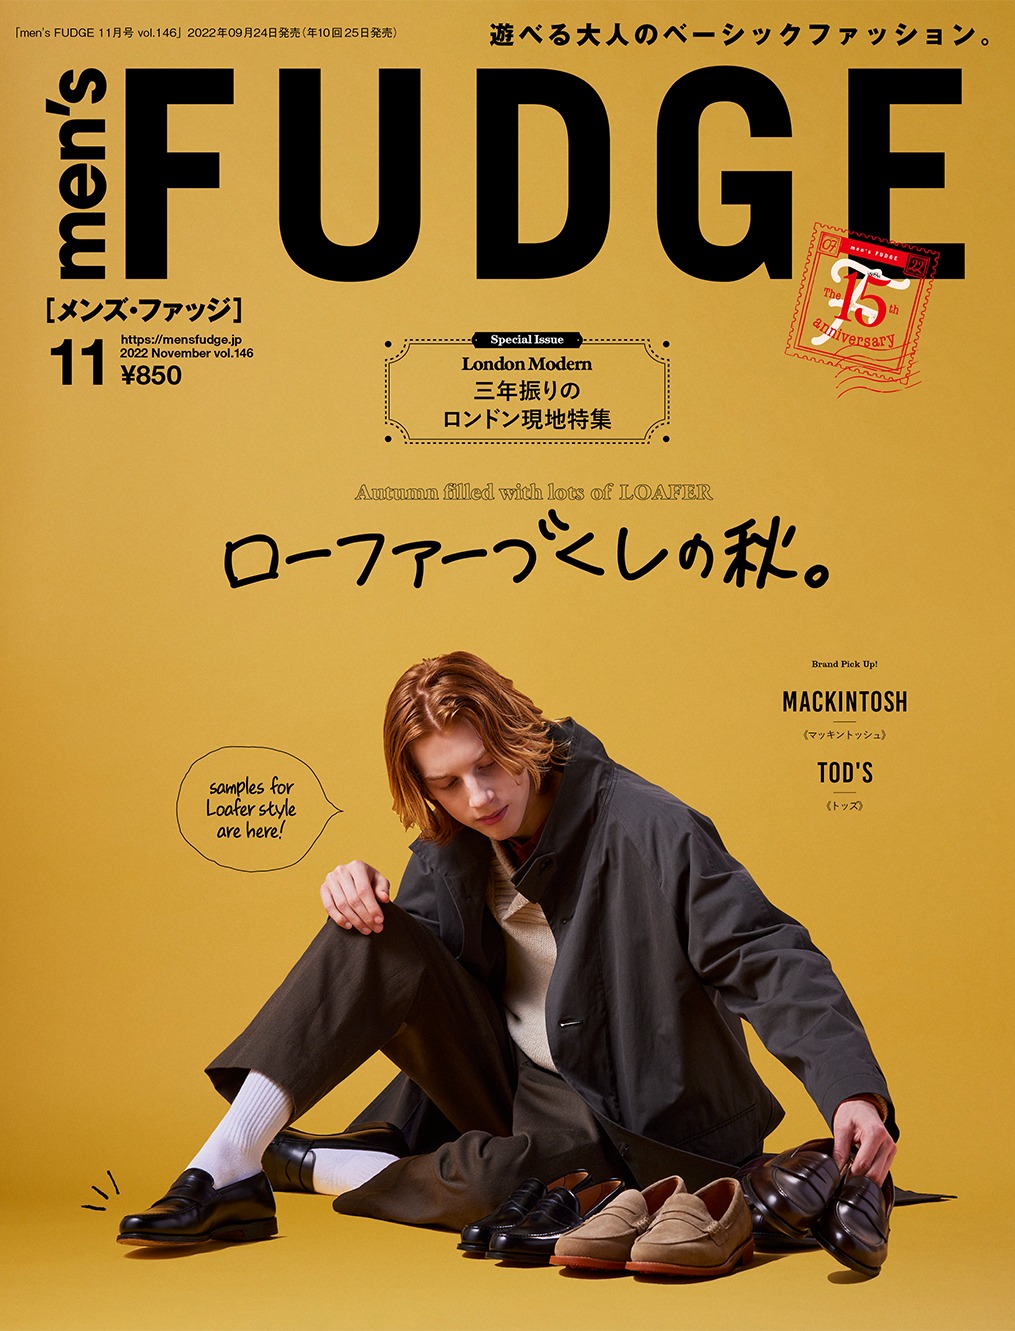 men's FUDGE vol 127,130〜141 まとめ売り